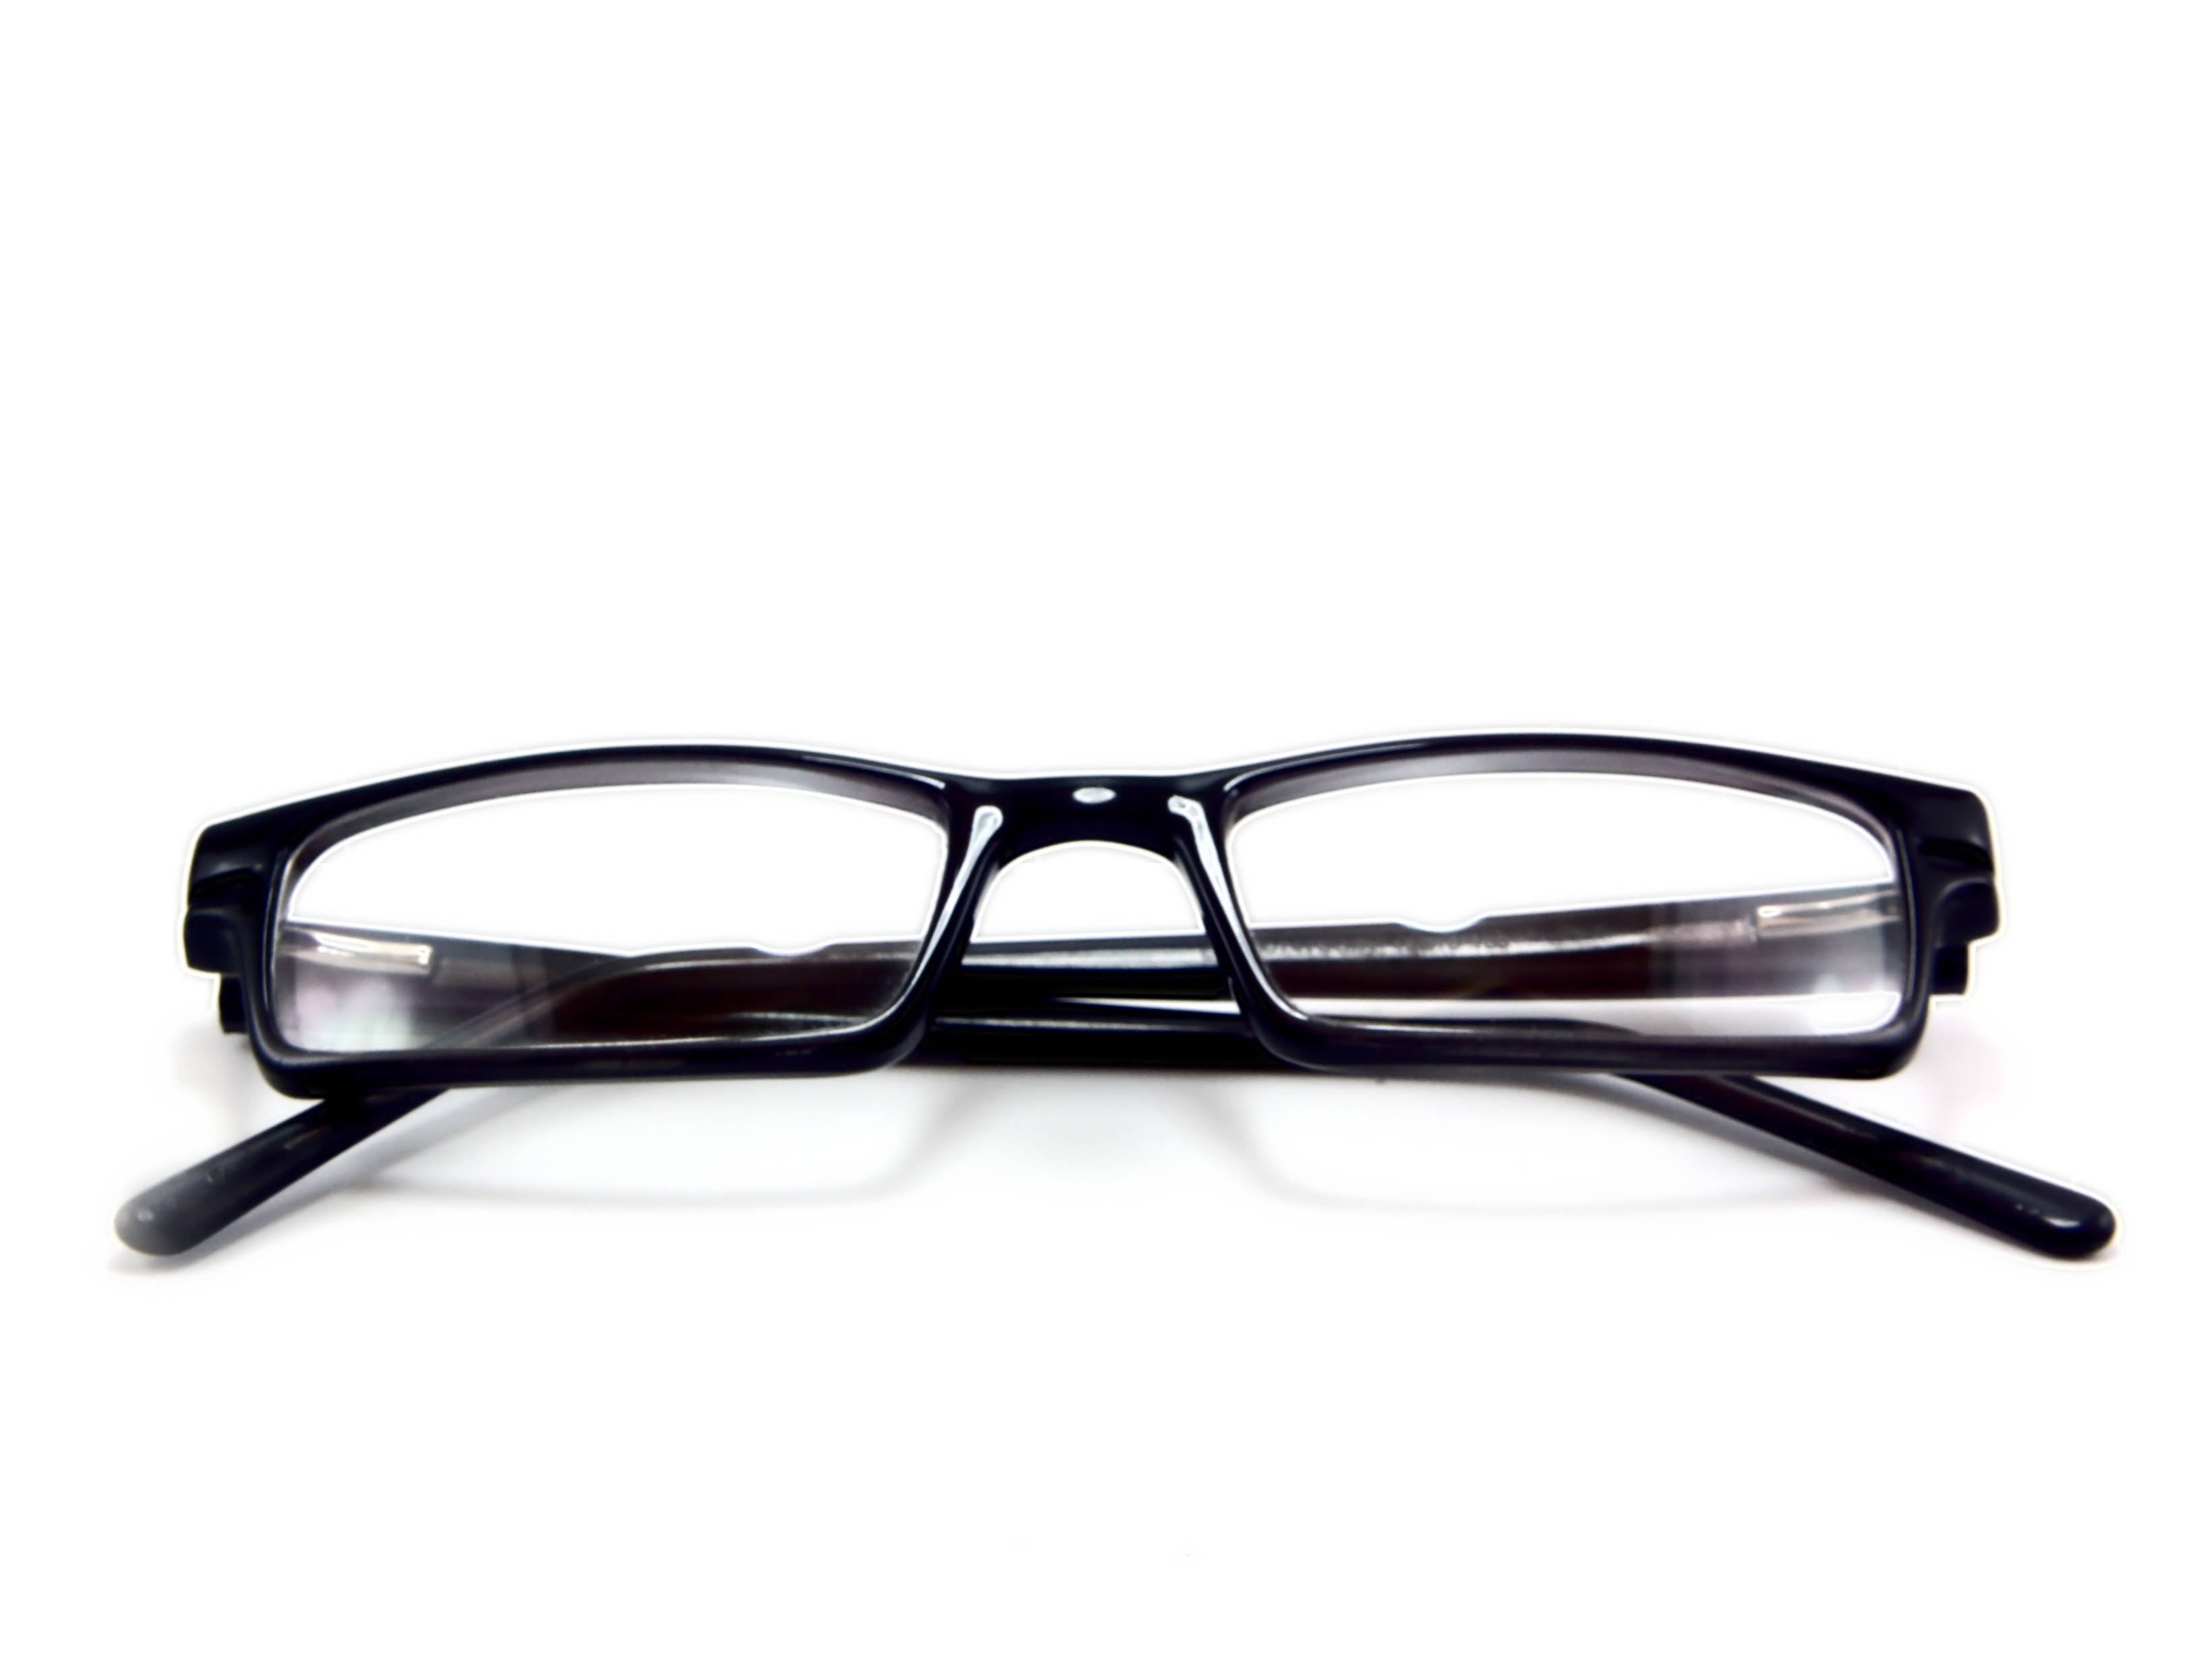 Free photo: Eyeglasses - White, Shining, Optical - Free Download - Jooinn